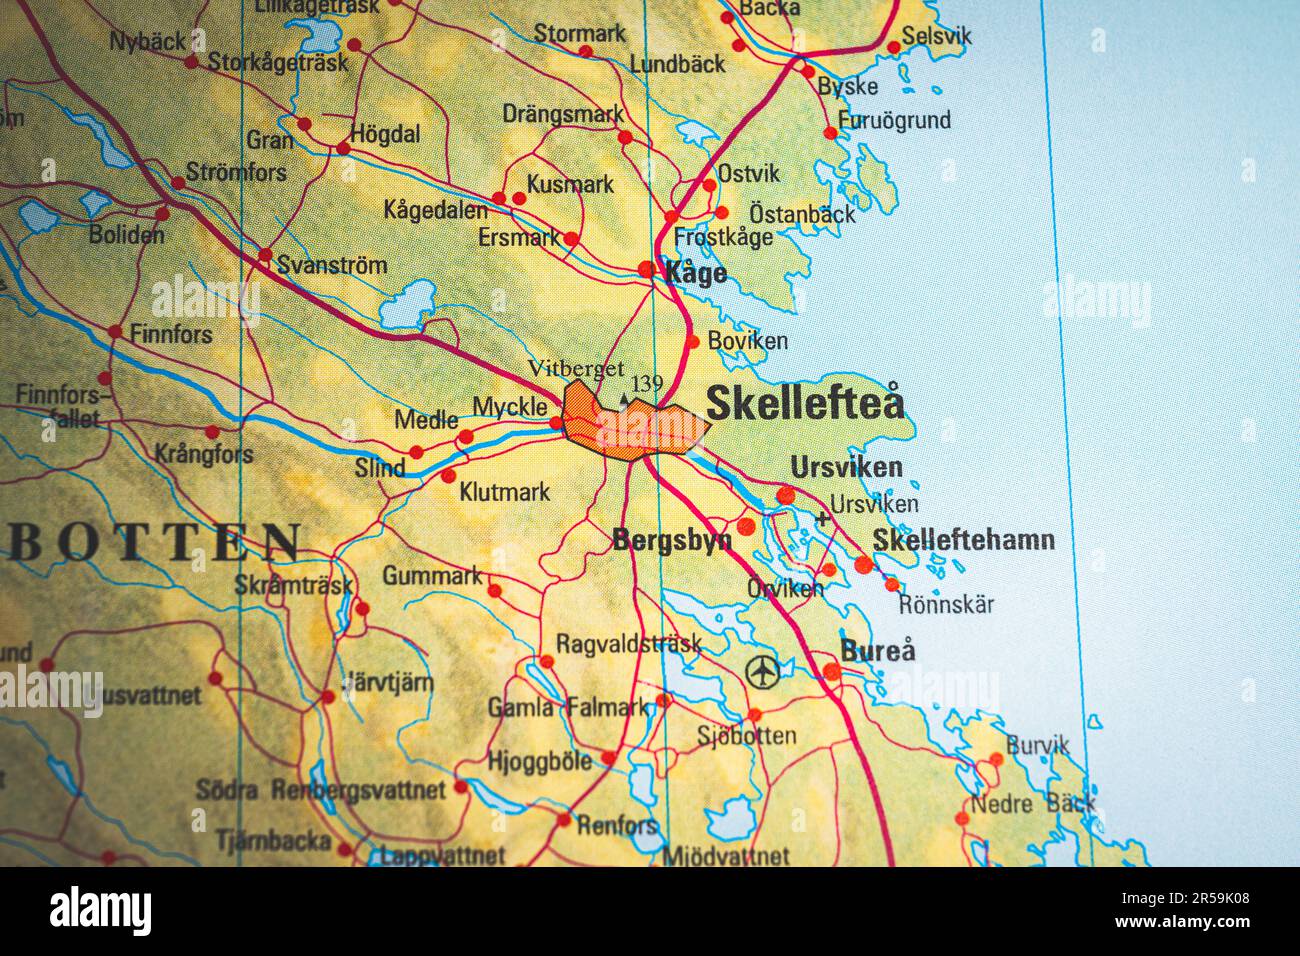 Atlas Map Of Skellefte In Sweden 2R59K08 